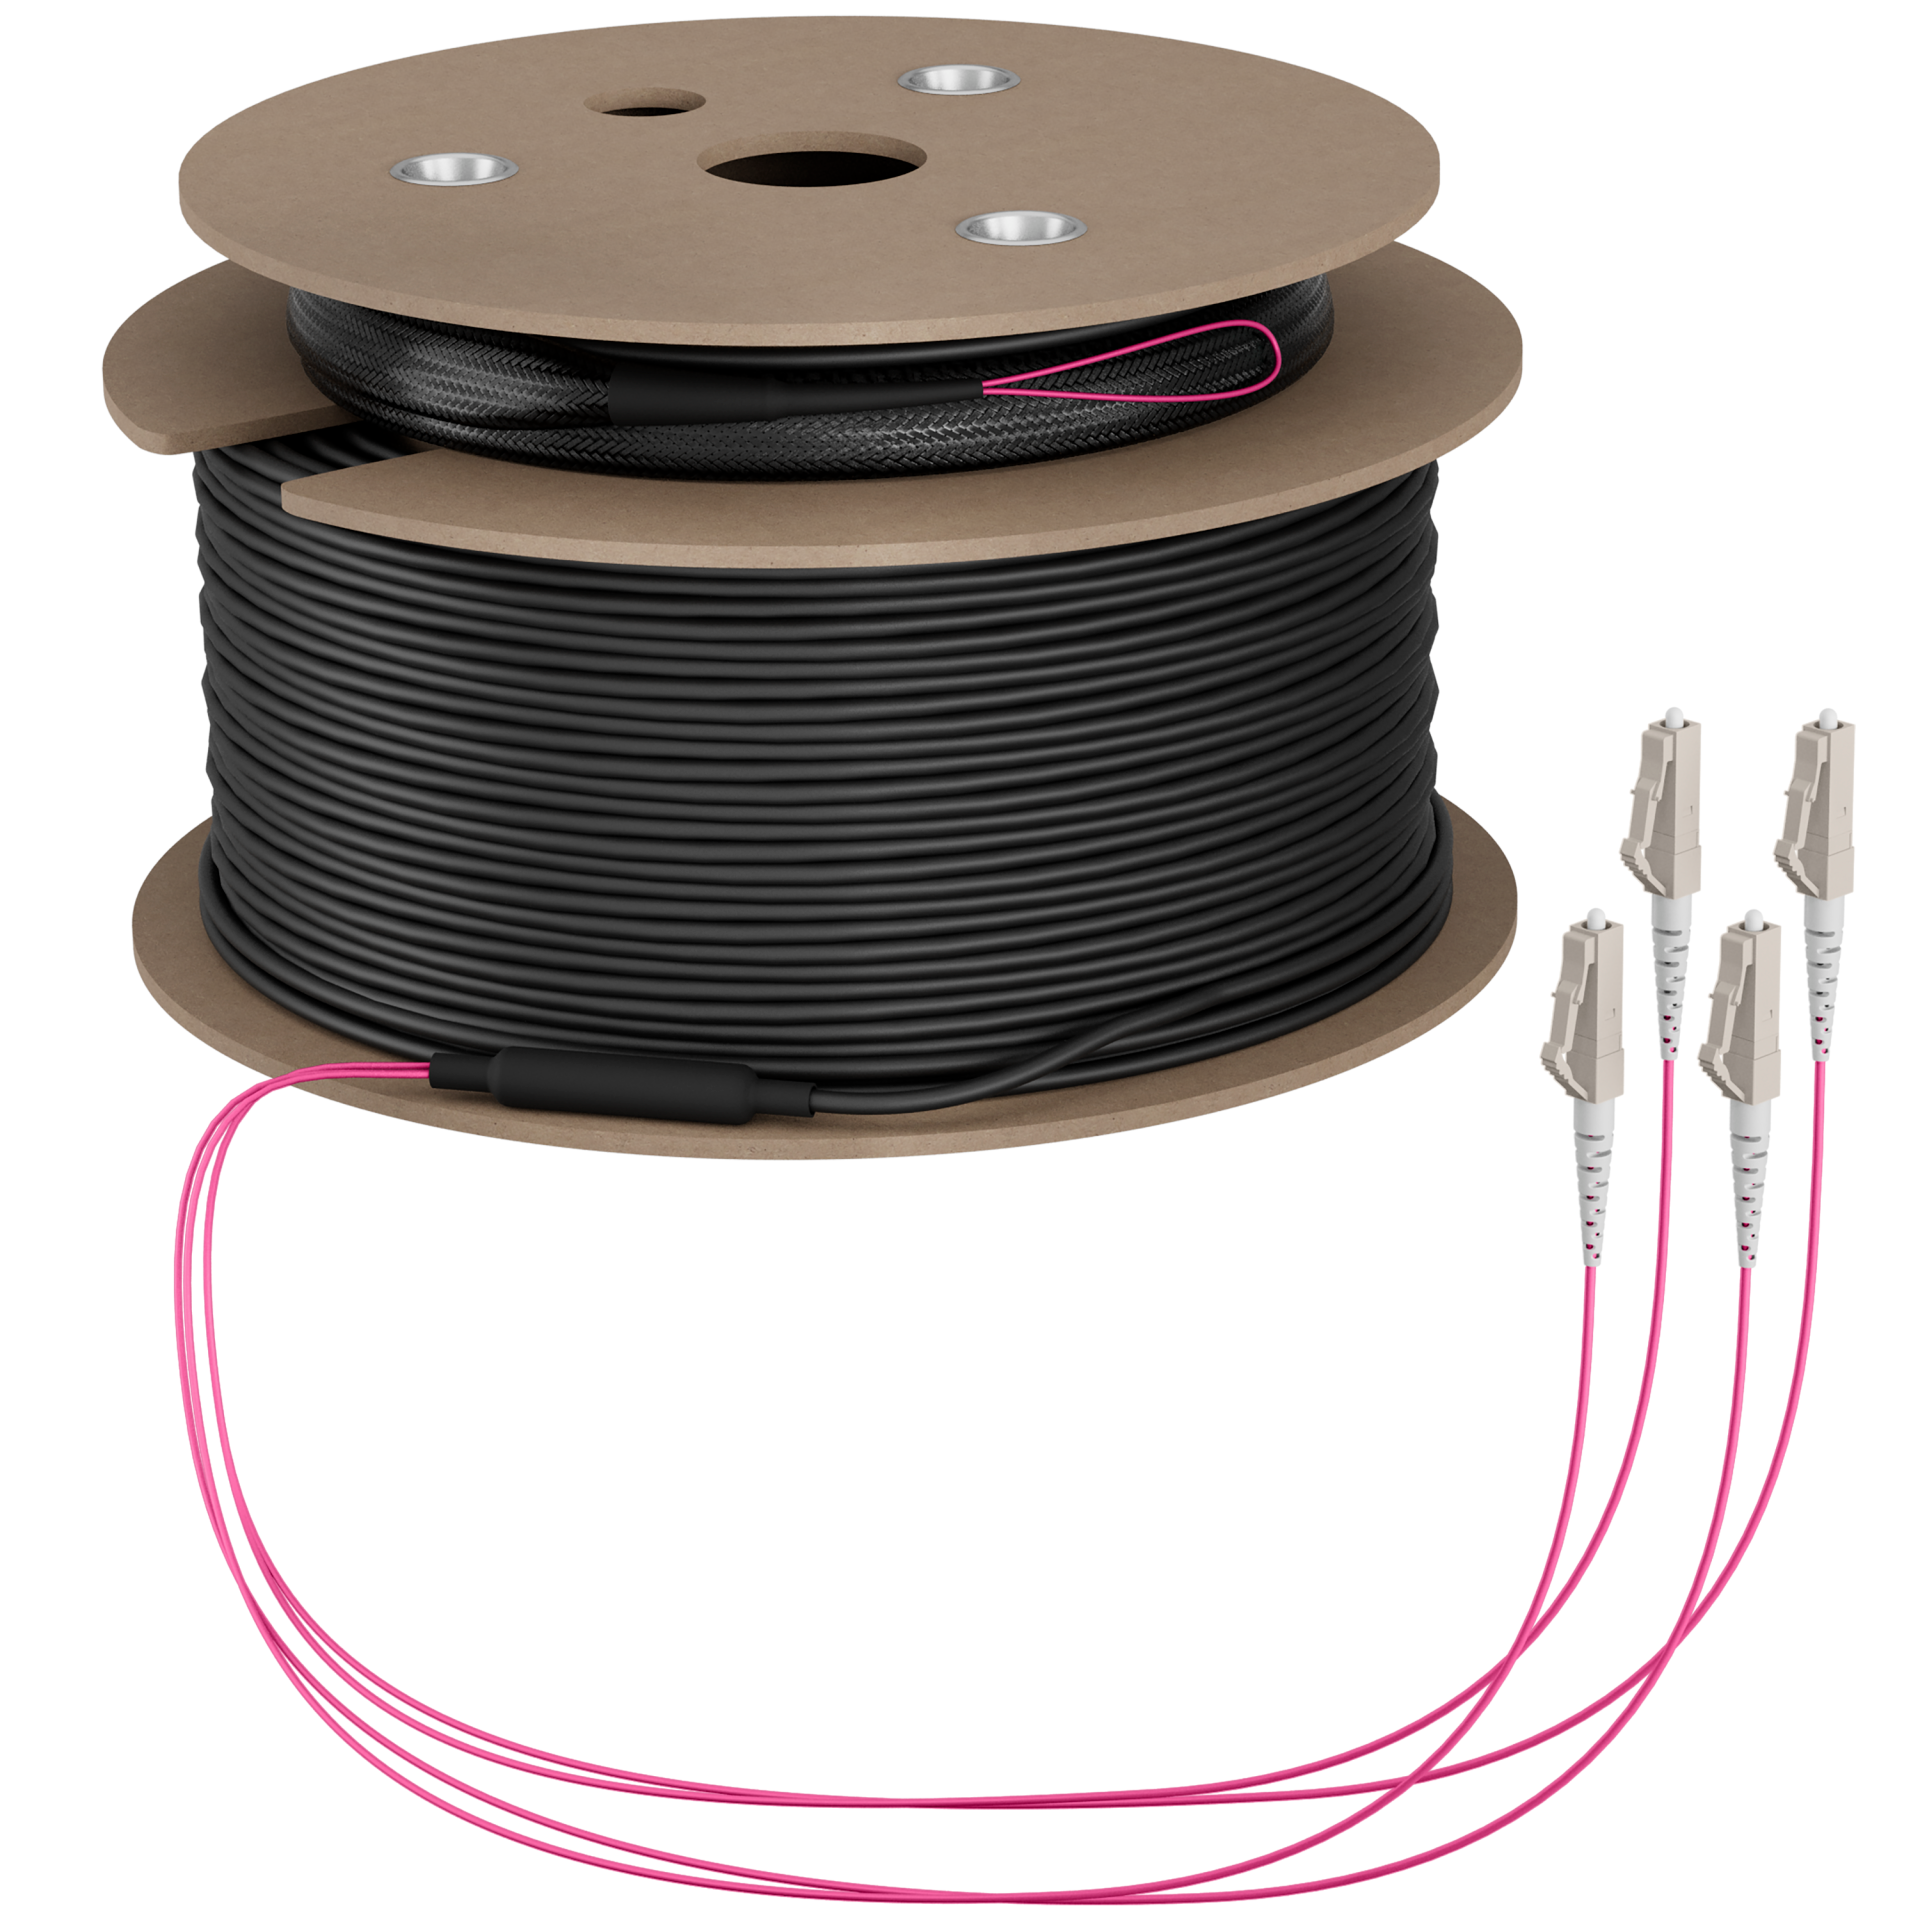 Trunk cable U-DQ(ZN)BH OM4 4G (1x4) LC-LC,160m Dca LSZH